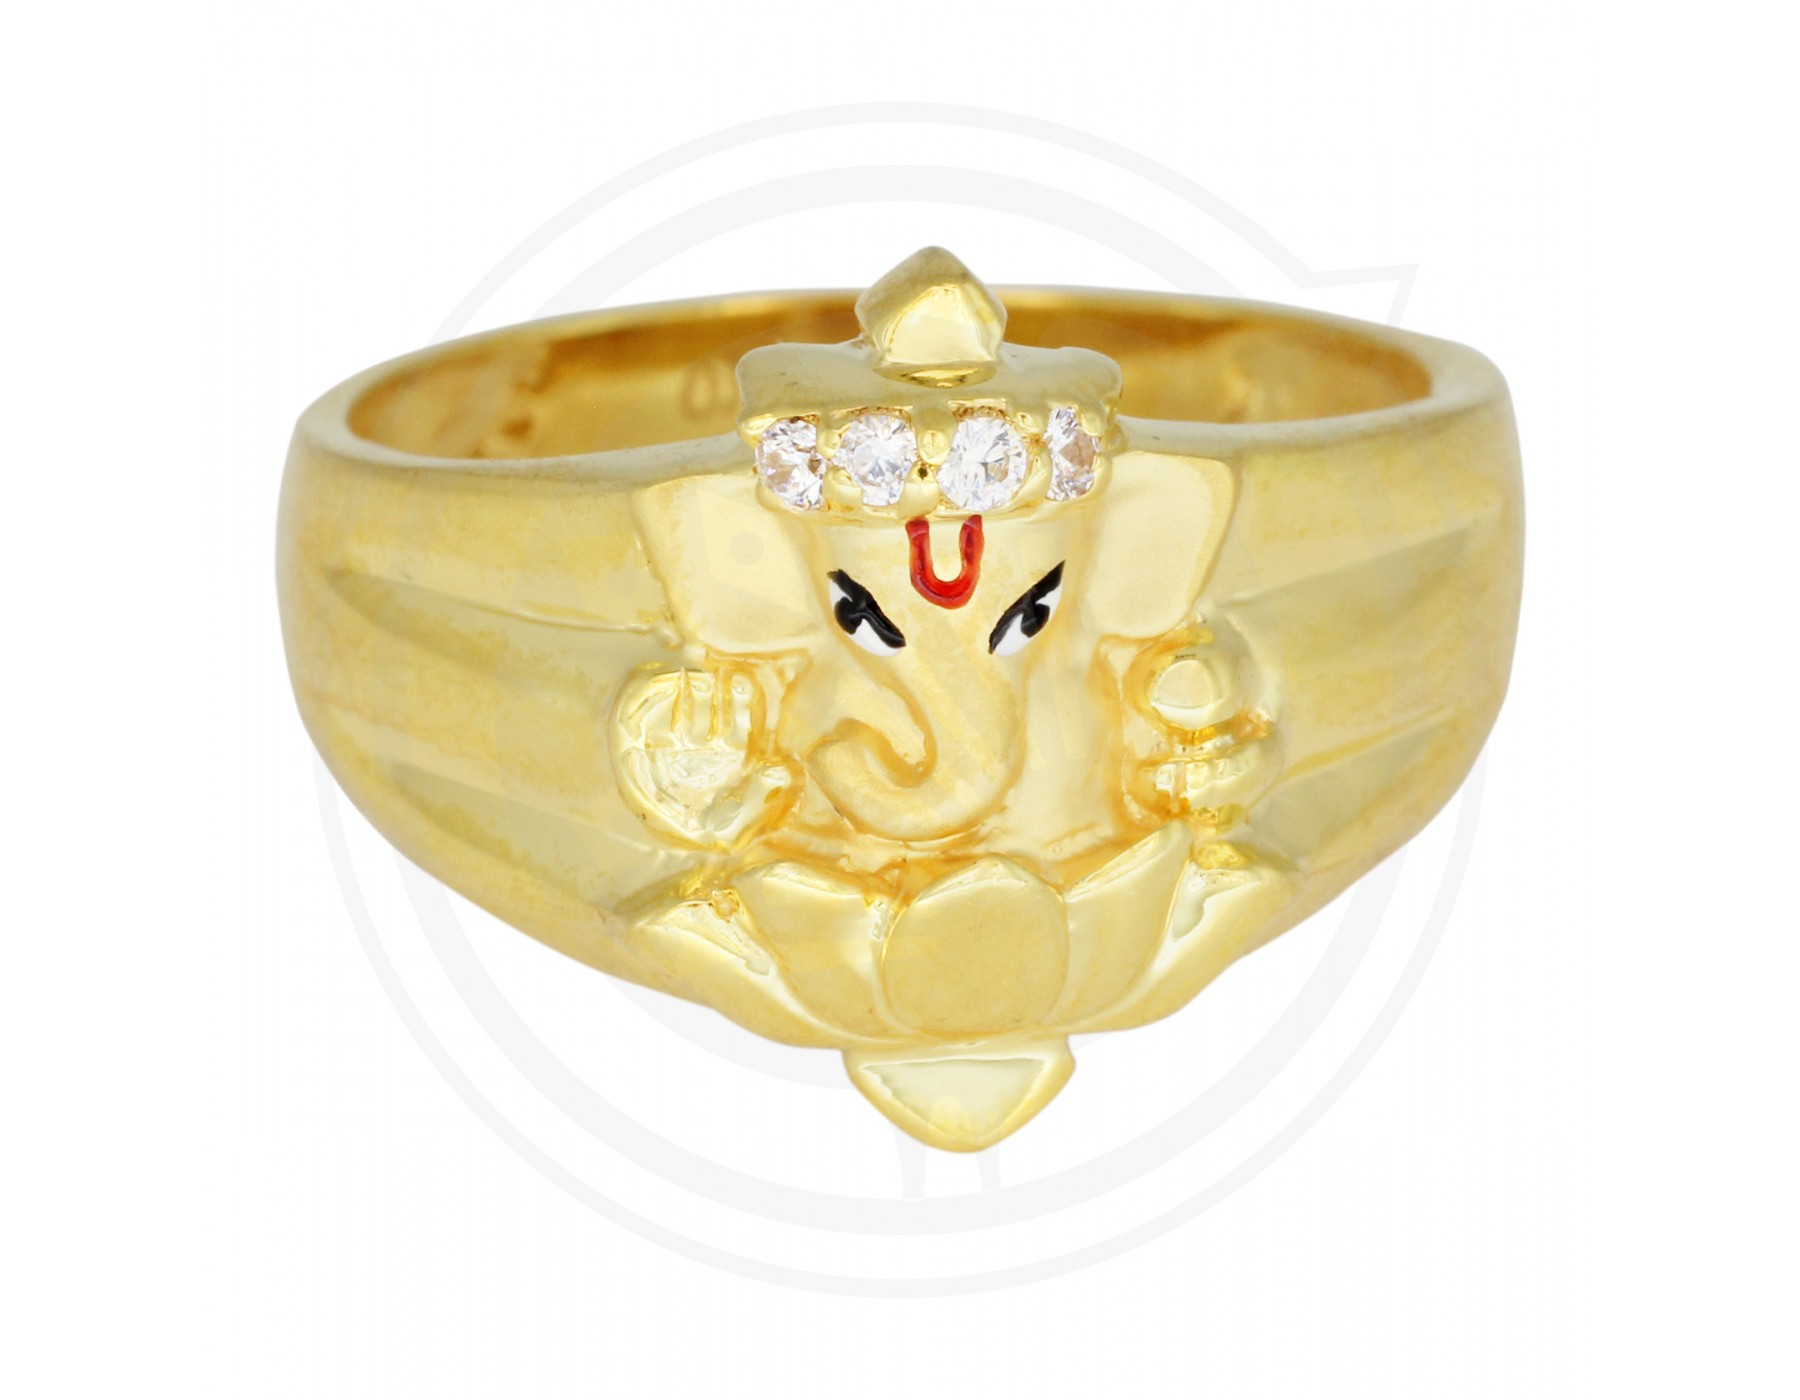 Vighna Vinashak Ganesha Ring in Pure Silver | Buy online OM POOJA SHOP –  ompoojashop